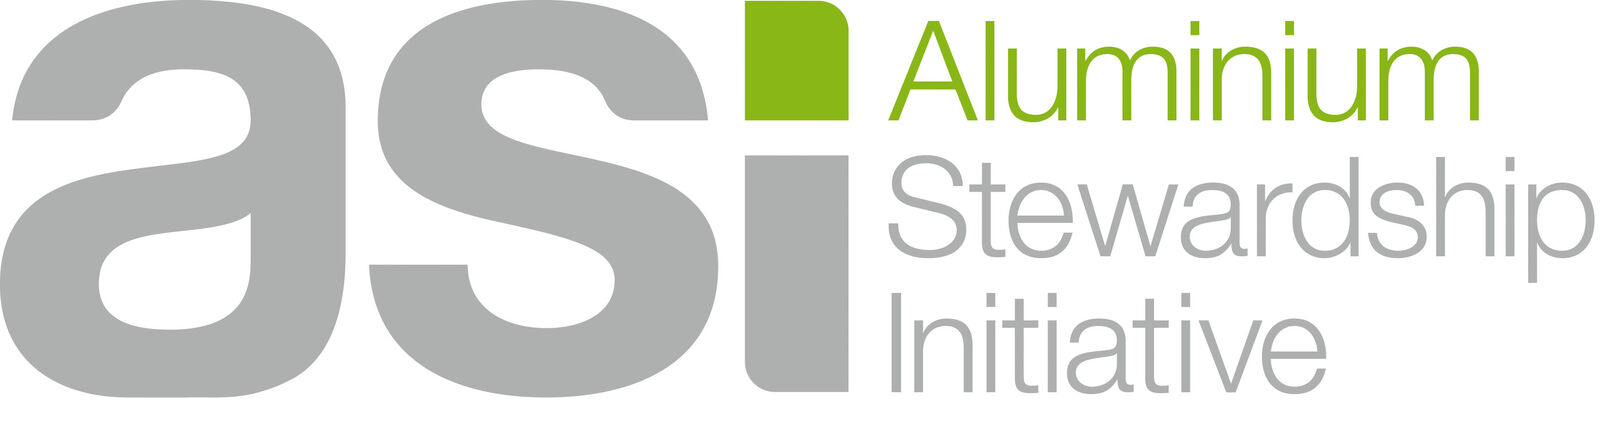 SIG tritt der Aluminium Stewardship Initiative bei, um die verantwortungsvolle Beschaffung voranzutreiben